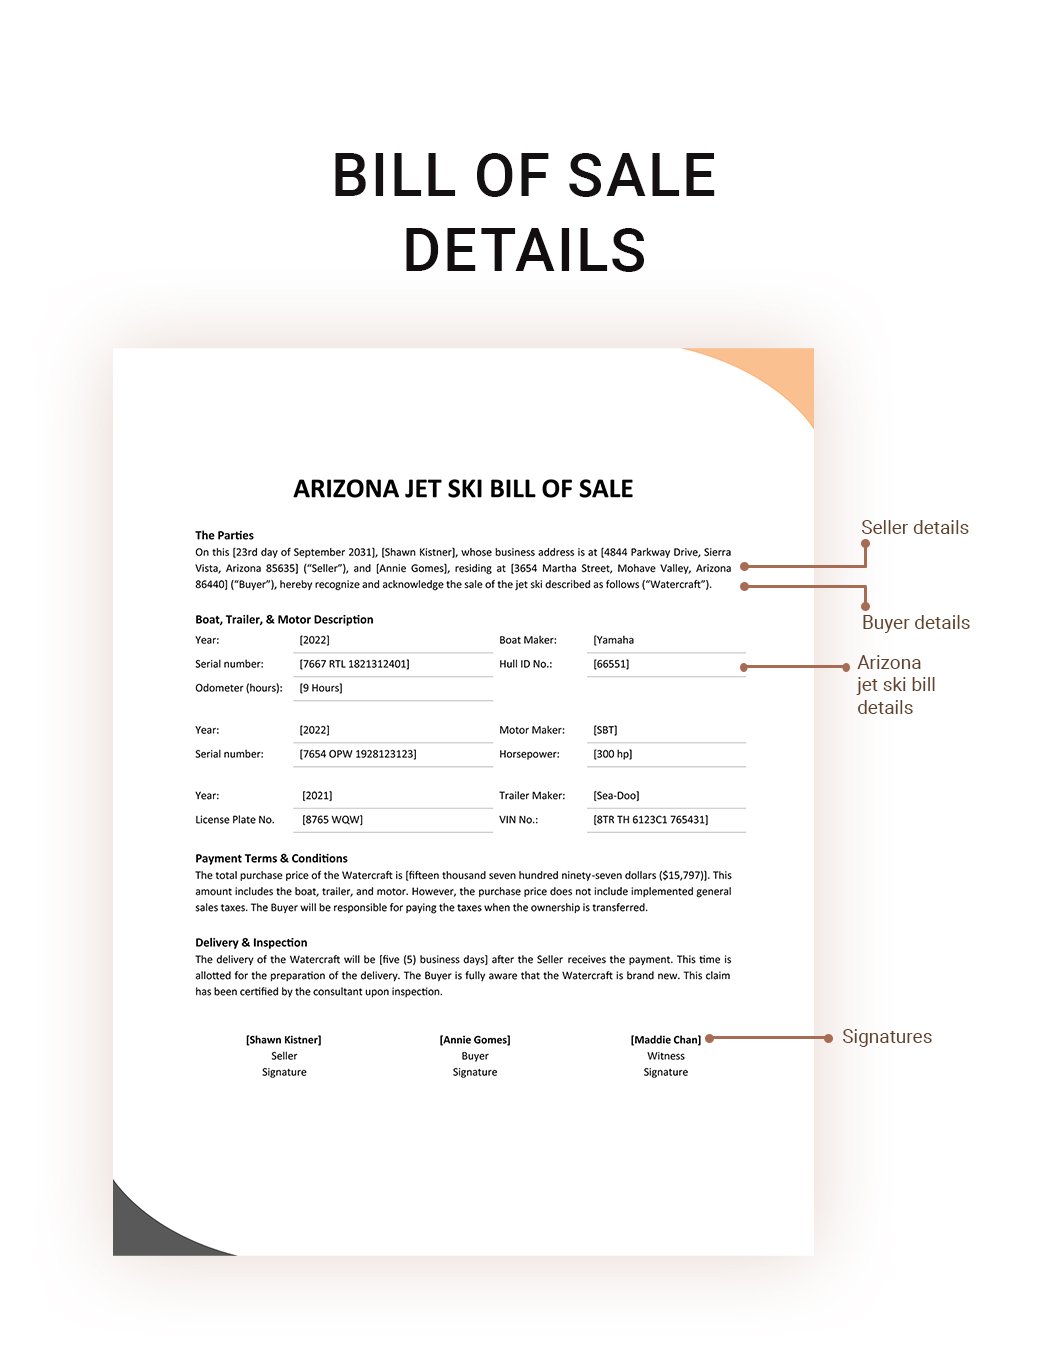 Arizona Jet Ski Bill Of Sale Template